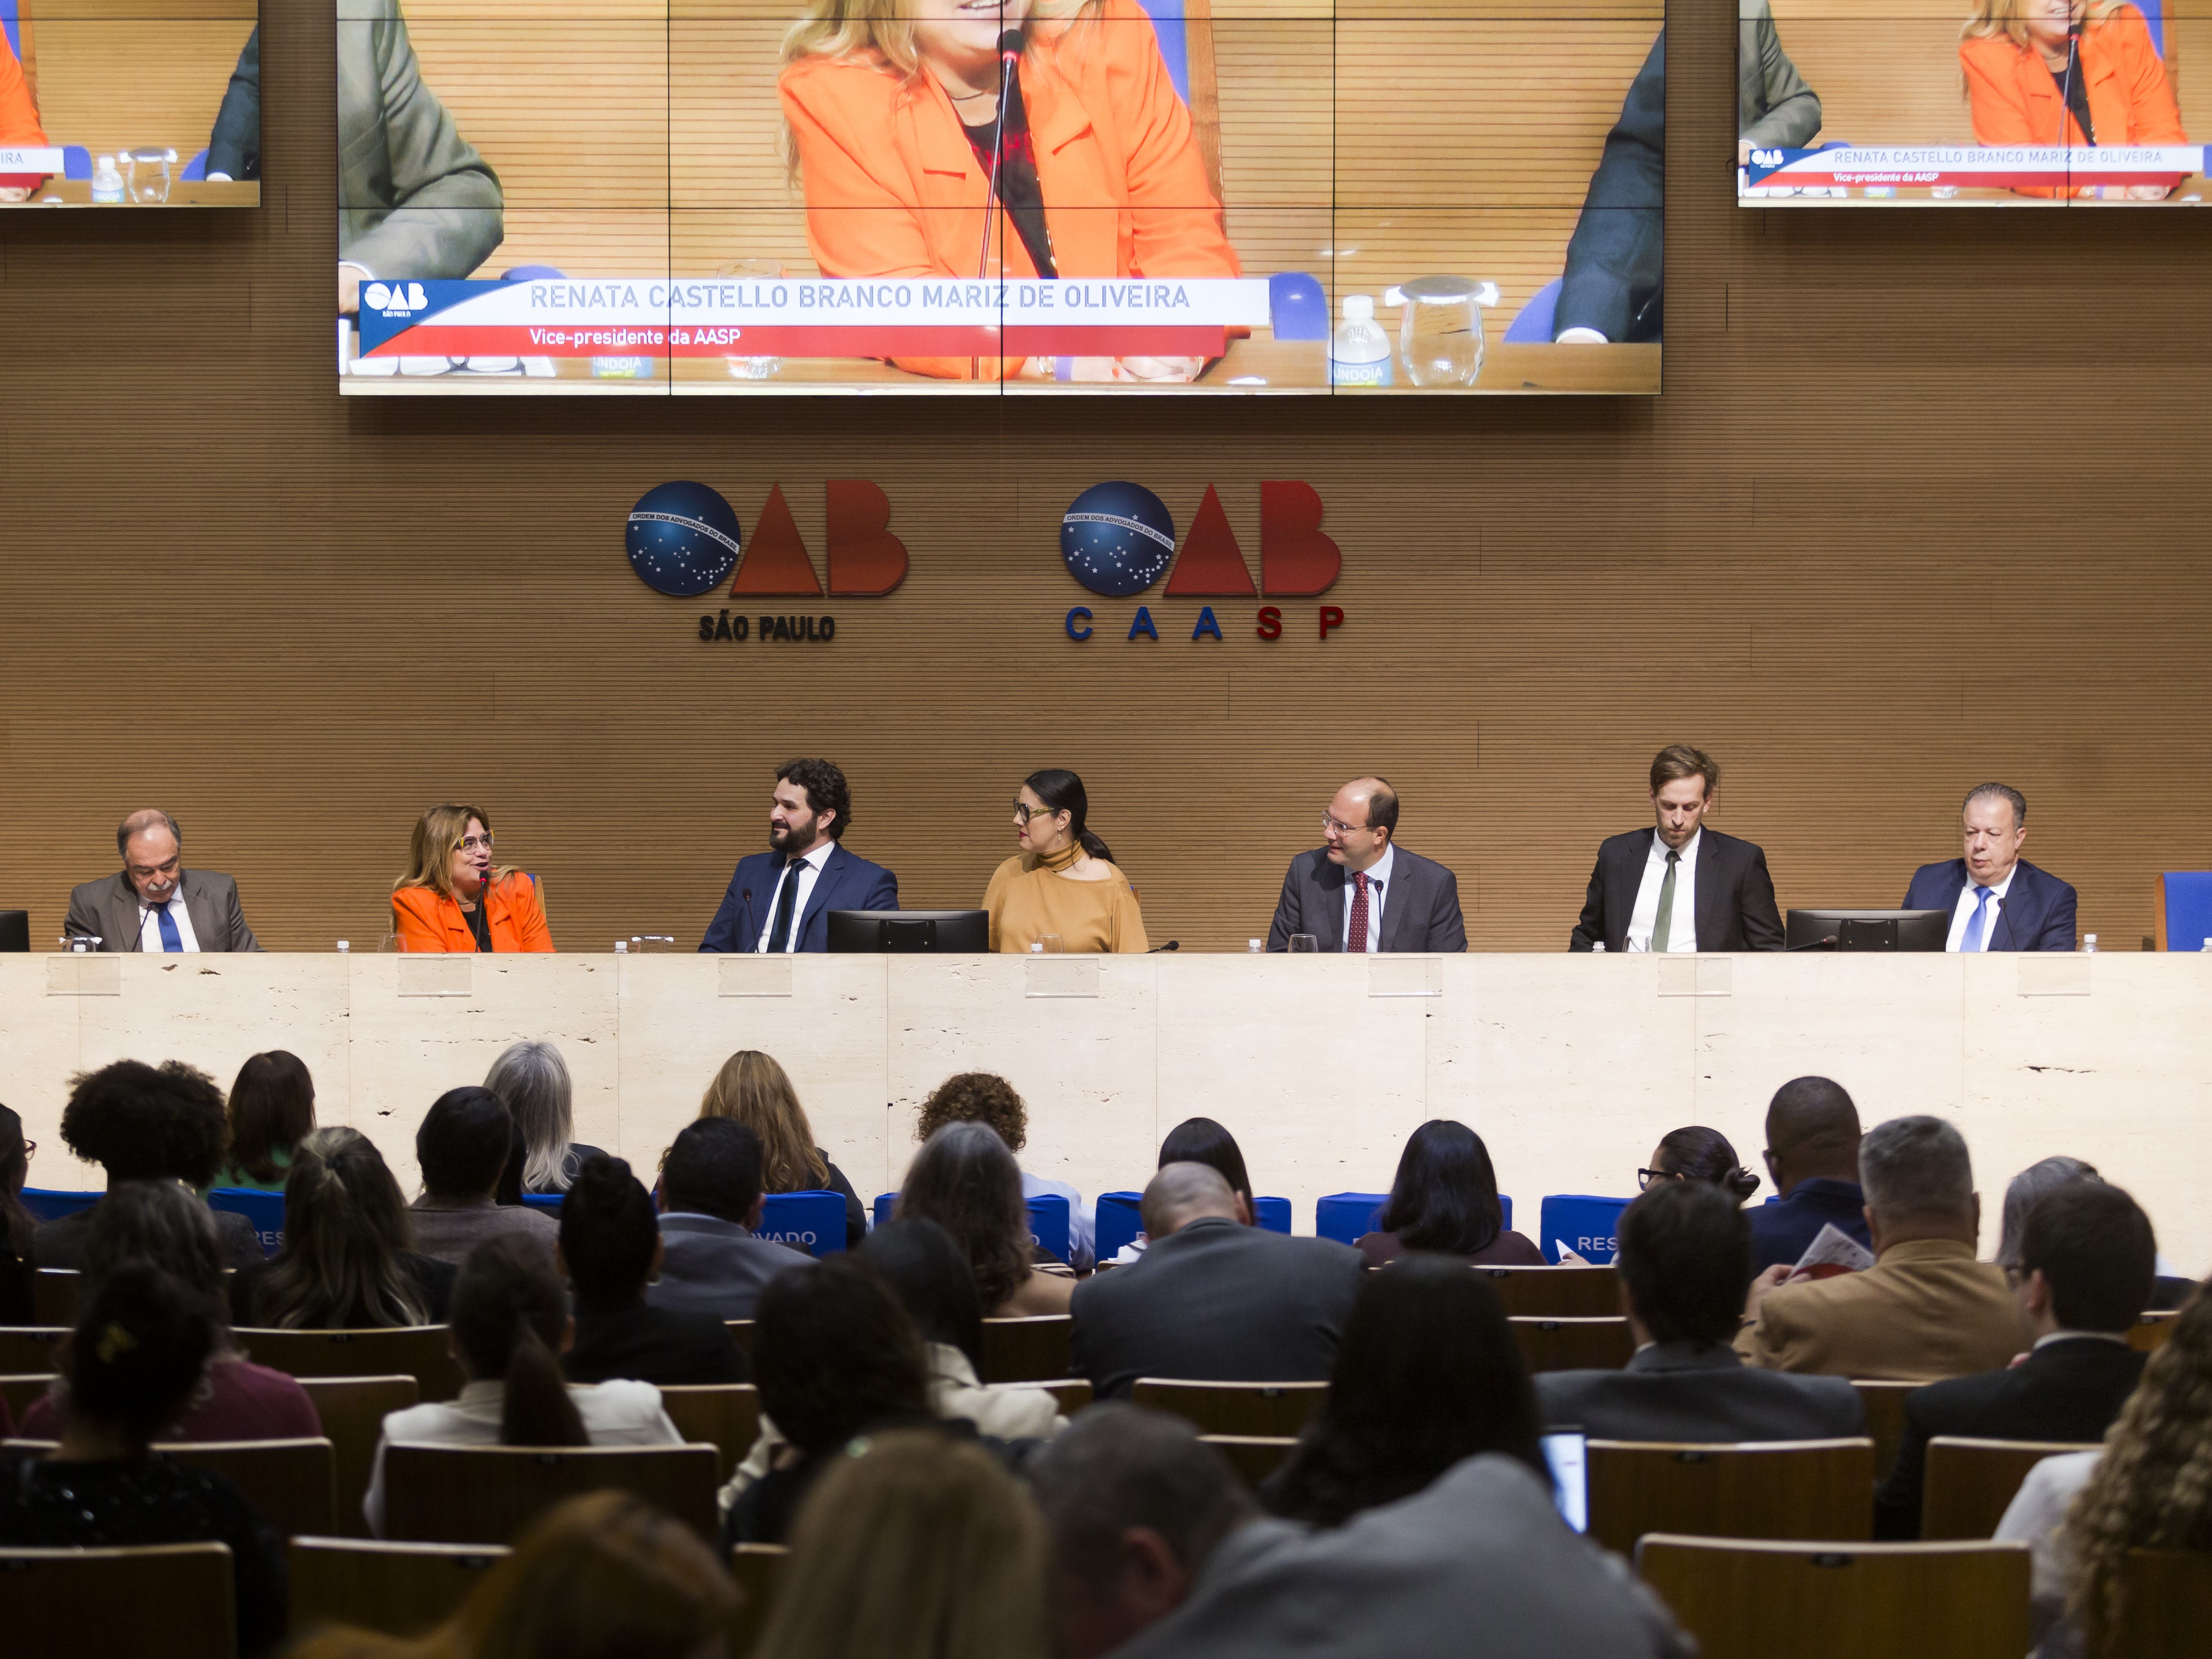 Grupo de sete pessoas sentadas atrás de um balcão, a frente de uma parede com os símbolos "OAB São Paulo" e "OAB CAASP". Uma plateia assiste a fala das sete pessoas.